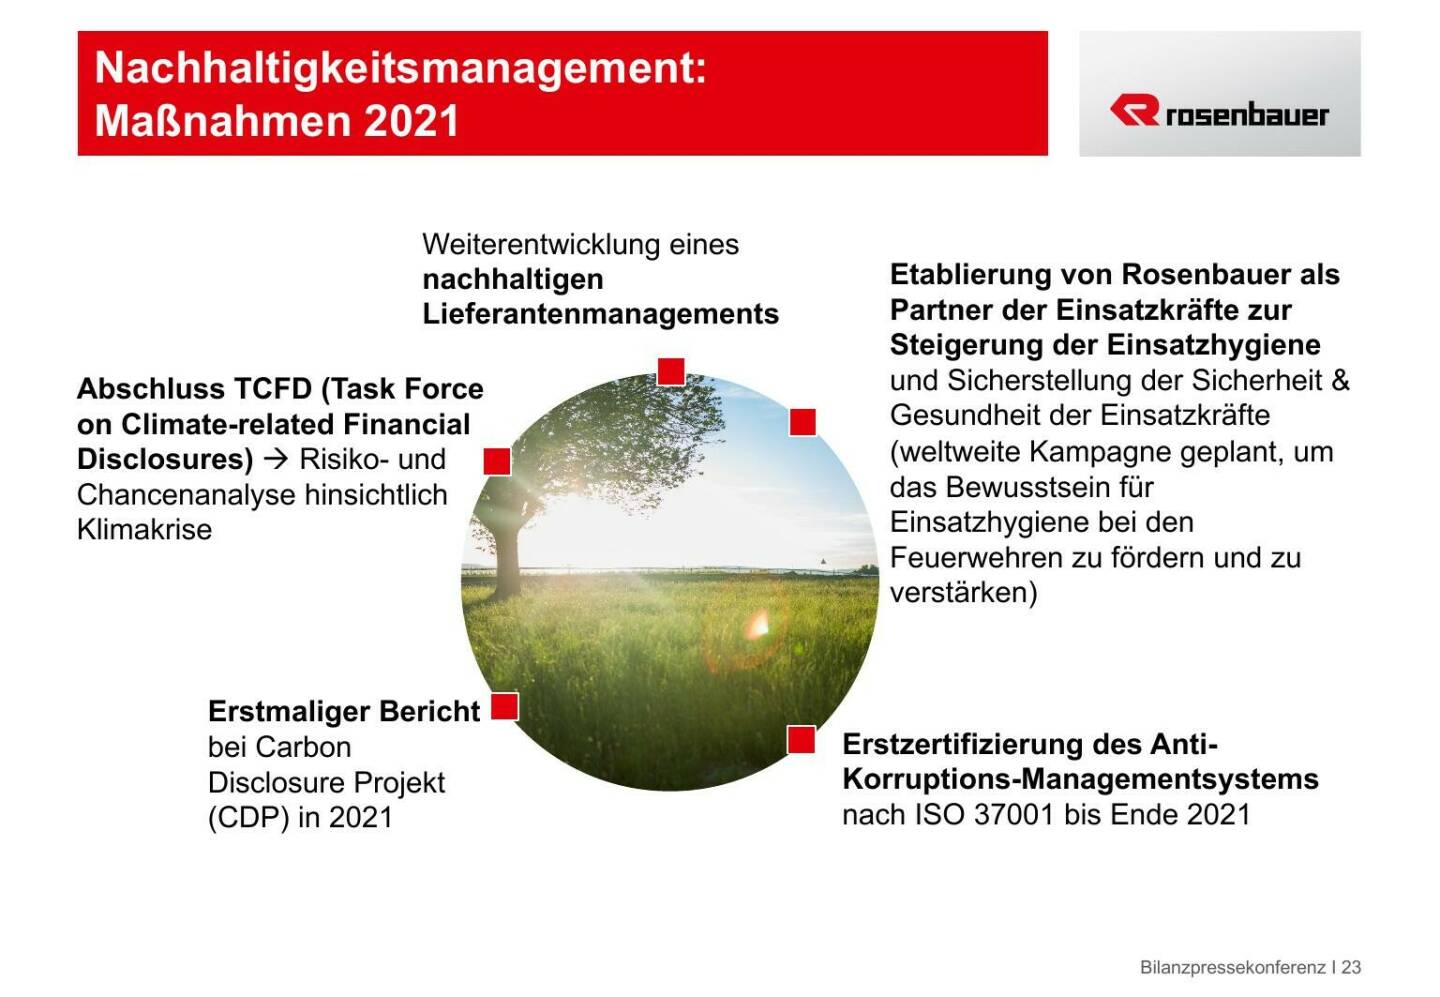 Rosenbauer - Nachhaltigkeitsmanagement: Maßnahmen 2021